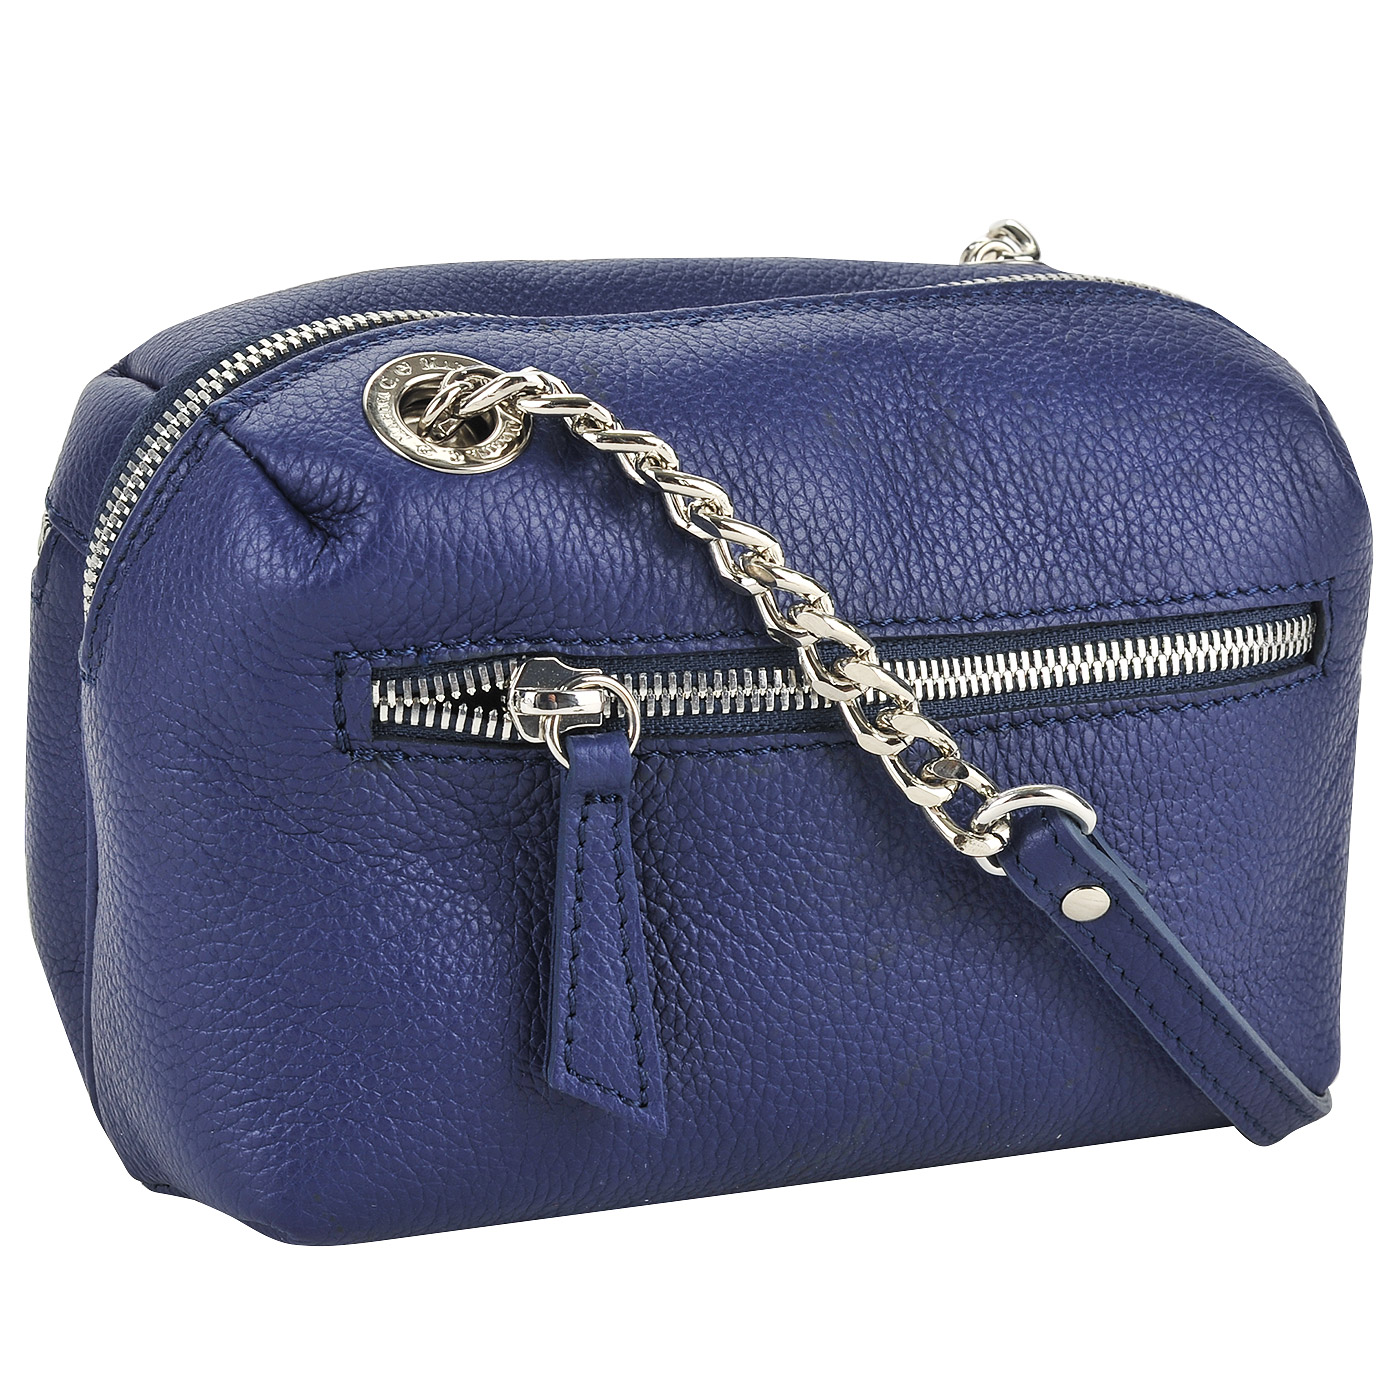 Синяя кожаная сумочка через плечо с серебряными клепками Marina Creazioni 